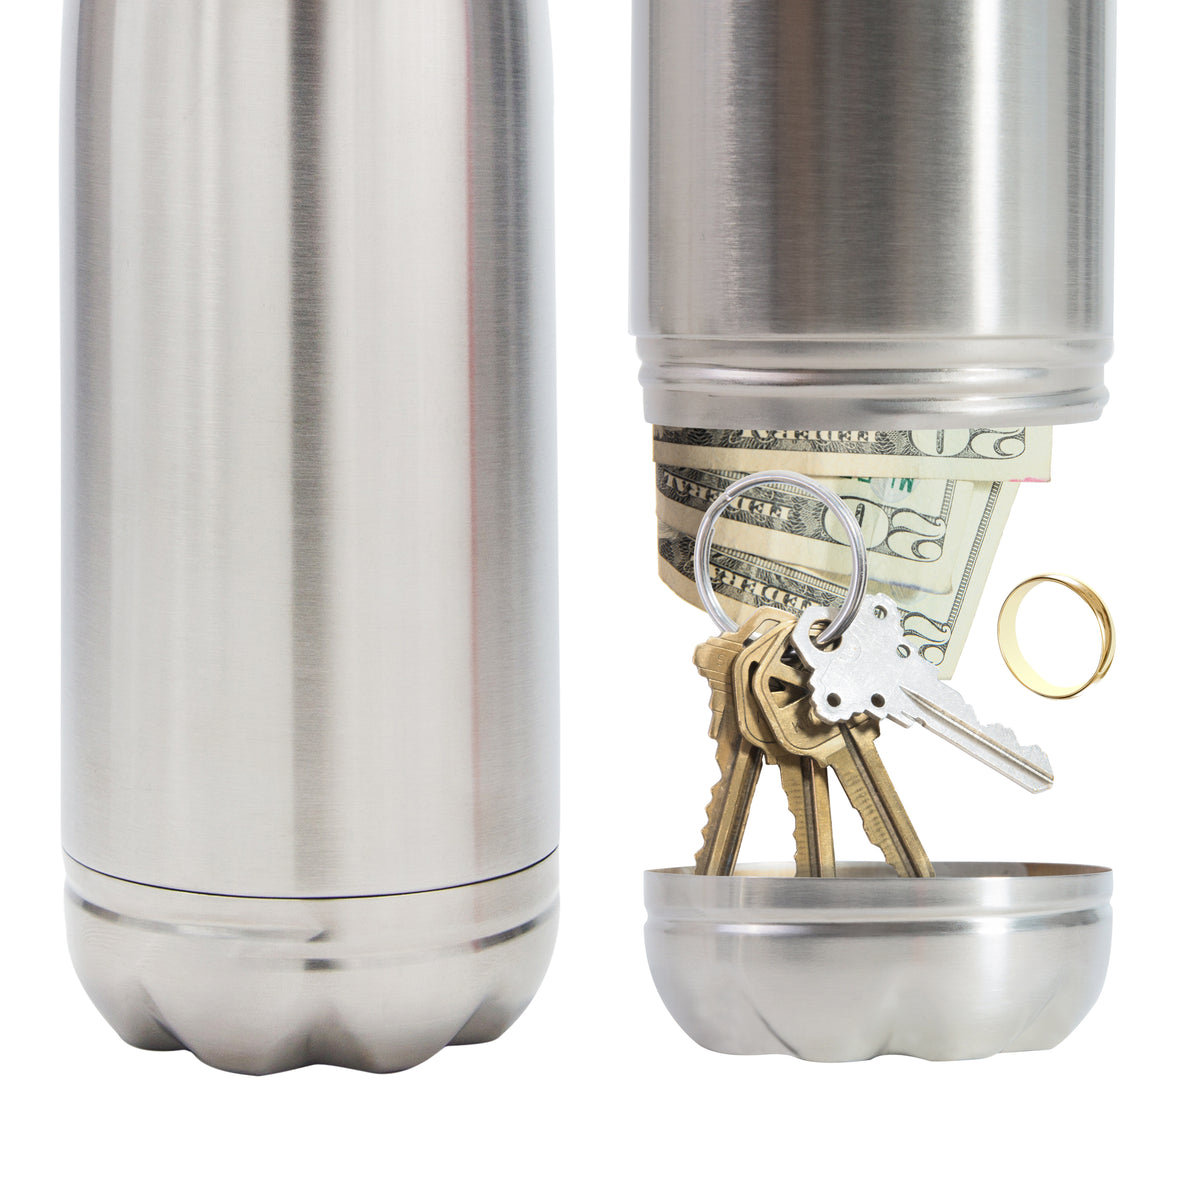 Diversion Water Bottle Stash Safe Can Secret Safes with Leak-proof Lid and  Huge Hidden Compartment for Keys, Cash and Valuables